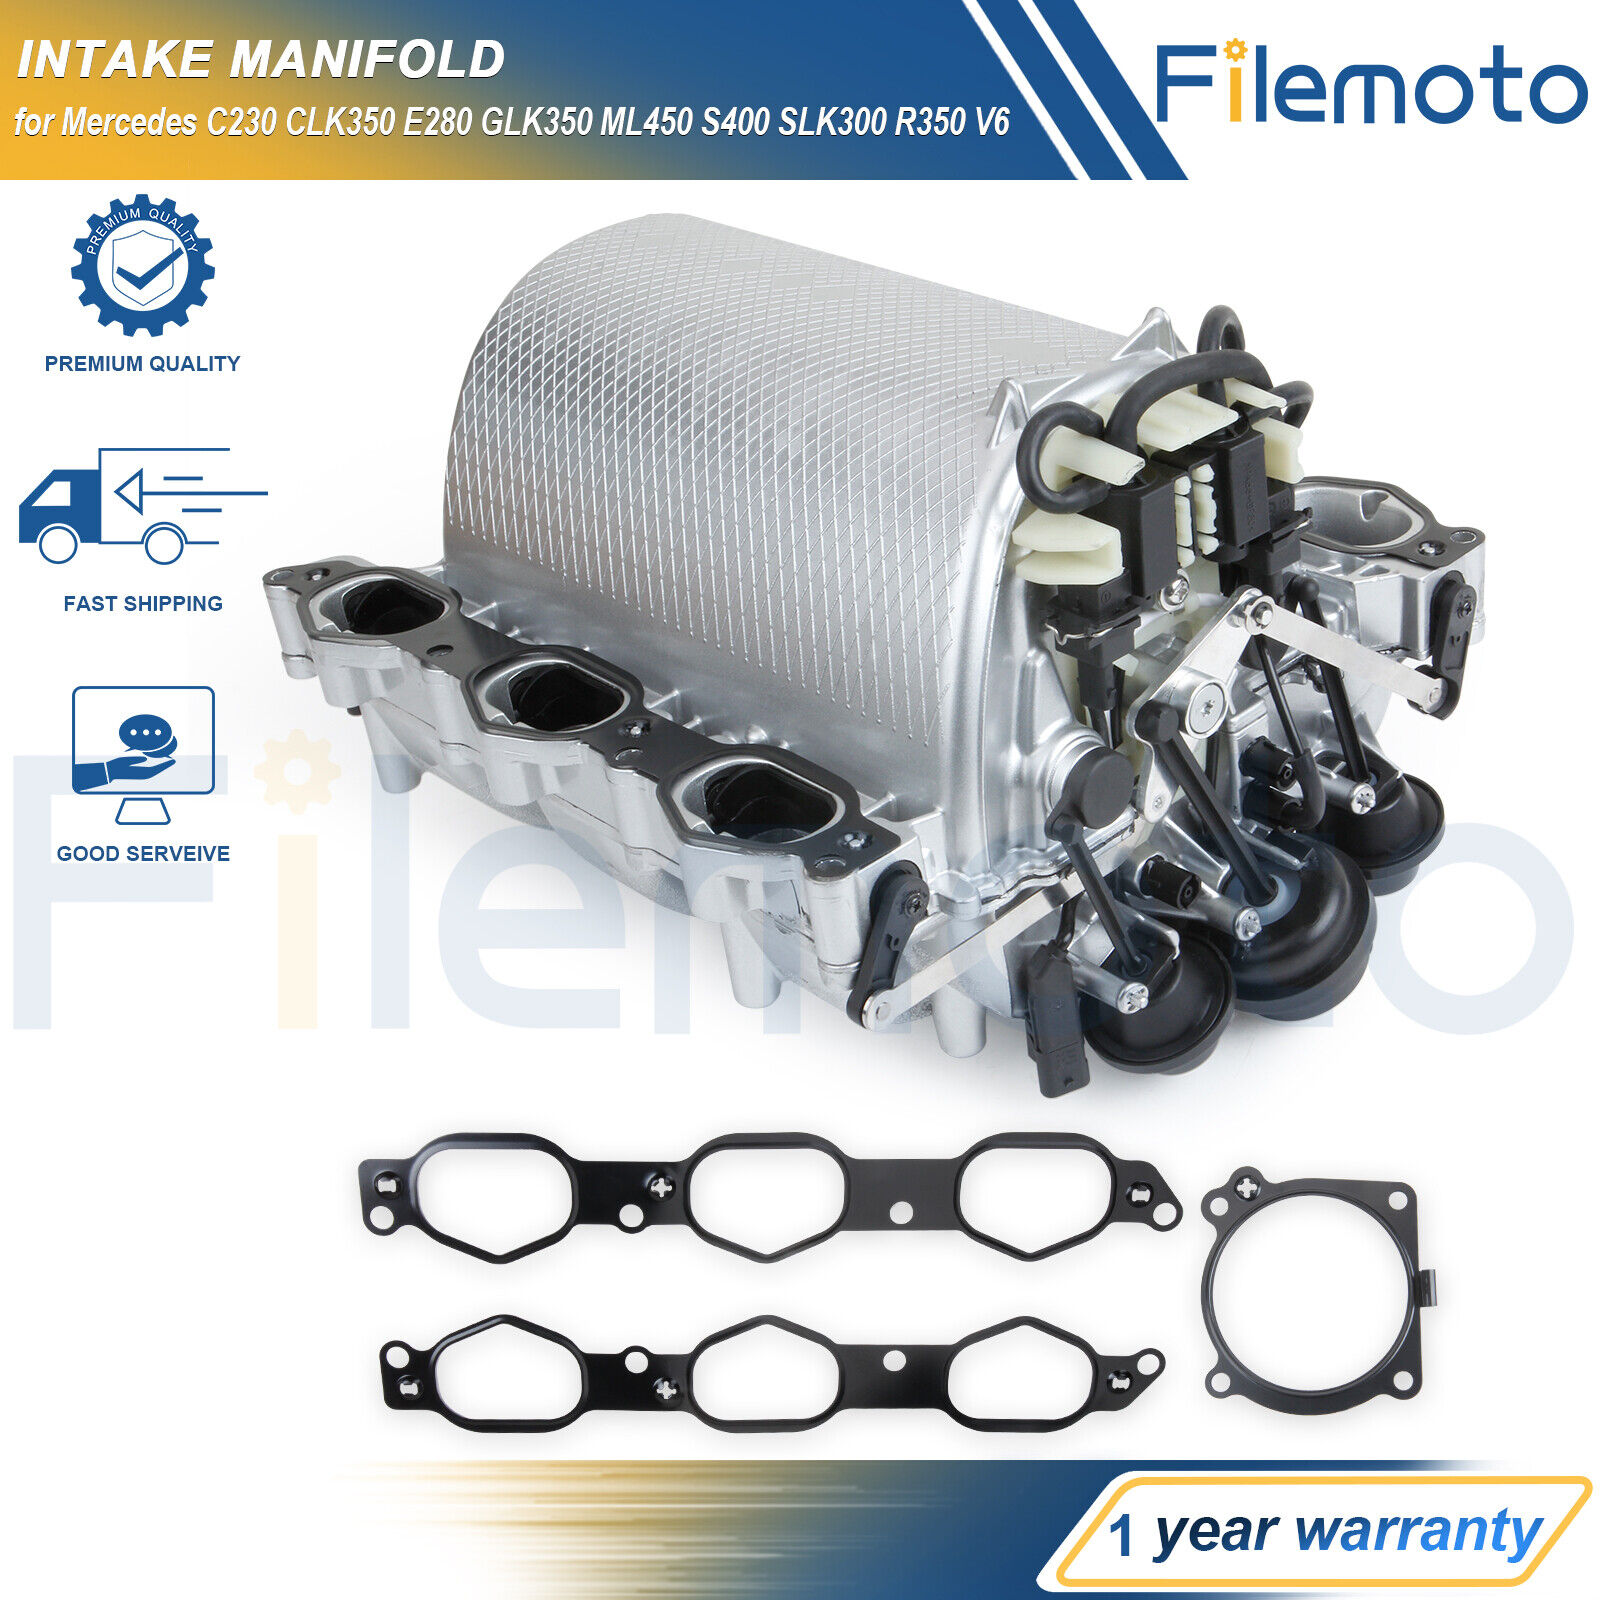 Intake Manifold for Mercedes C230 CLK350 E280 GLK350 ML450 S400 SLK300 R350 V6